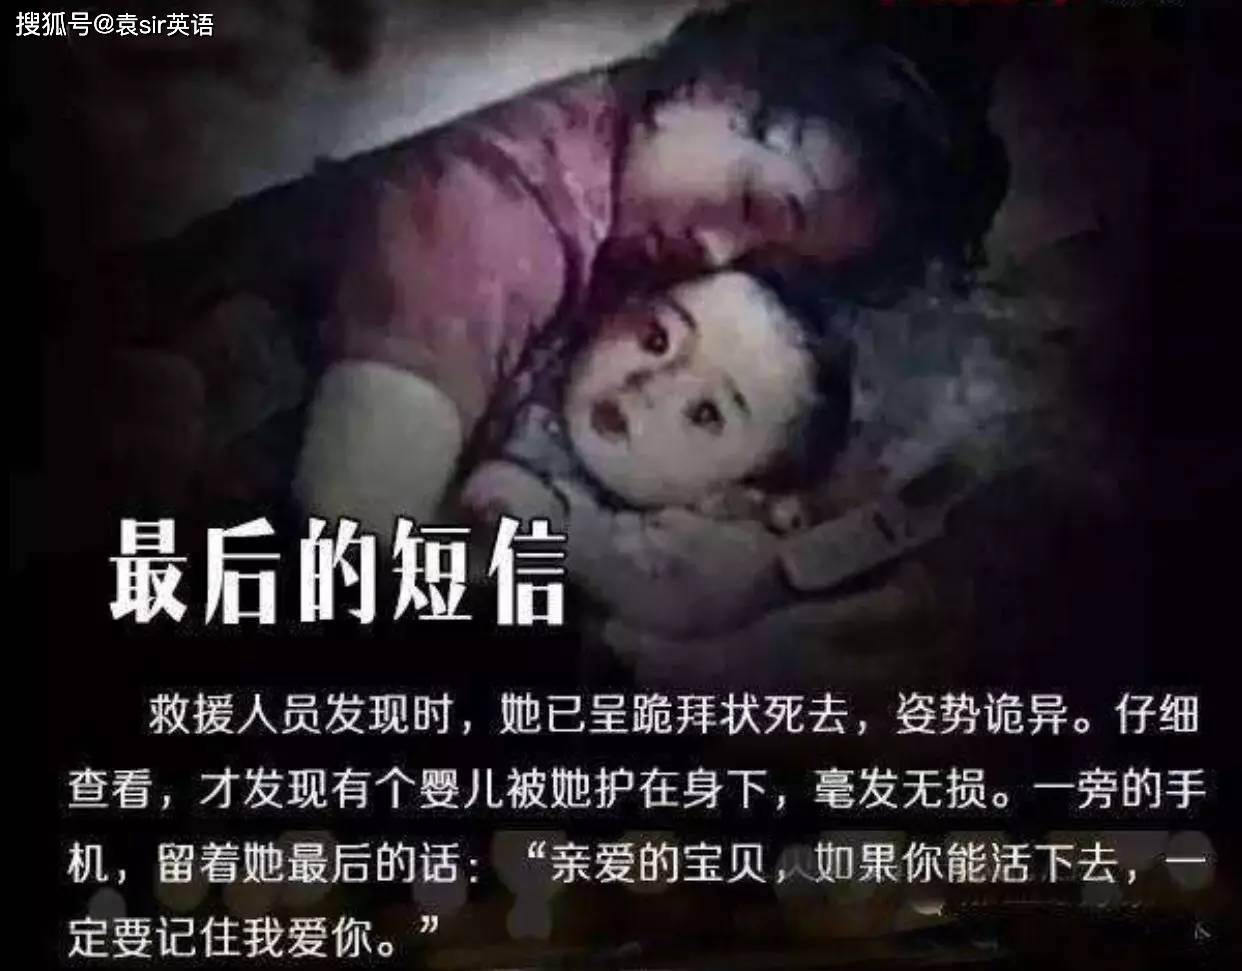 哈4歲幼女被鄰居性侵 犯人曾因殺人強姦兩次獲刑 - 時事台 - 香港高登討論區